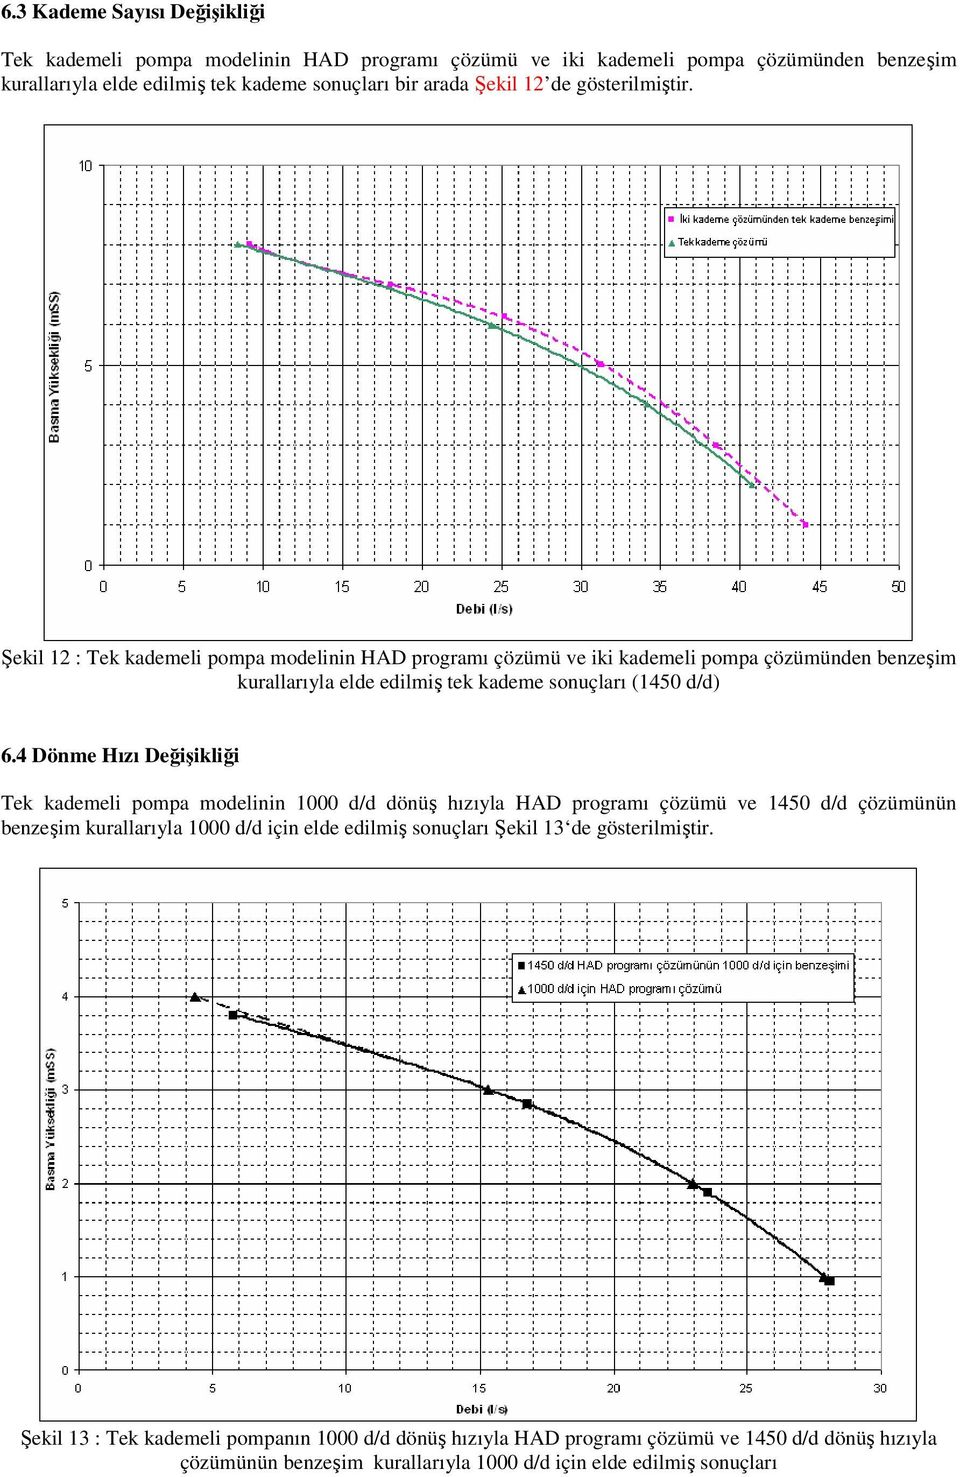 4 Dönme Hızı Değişikliği Tek kademeli pompa modelinin 1000 d/d dönüş hızıyla HAD programı çözümü ve 1450 d/d çözümünün benzeşim kurallarıyla 1000 d/d için elde edilmiş sonuçları Şekil